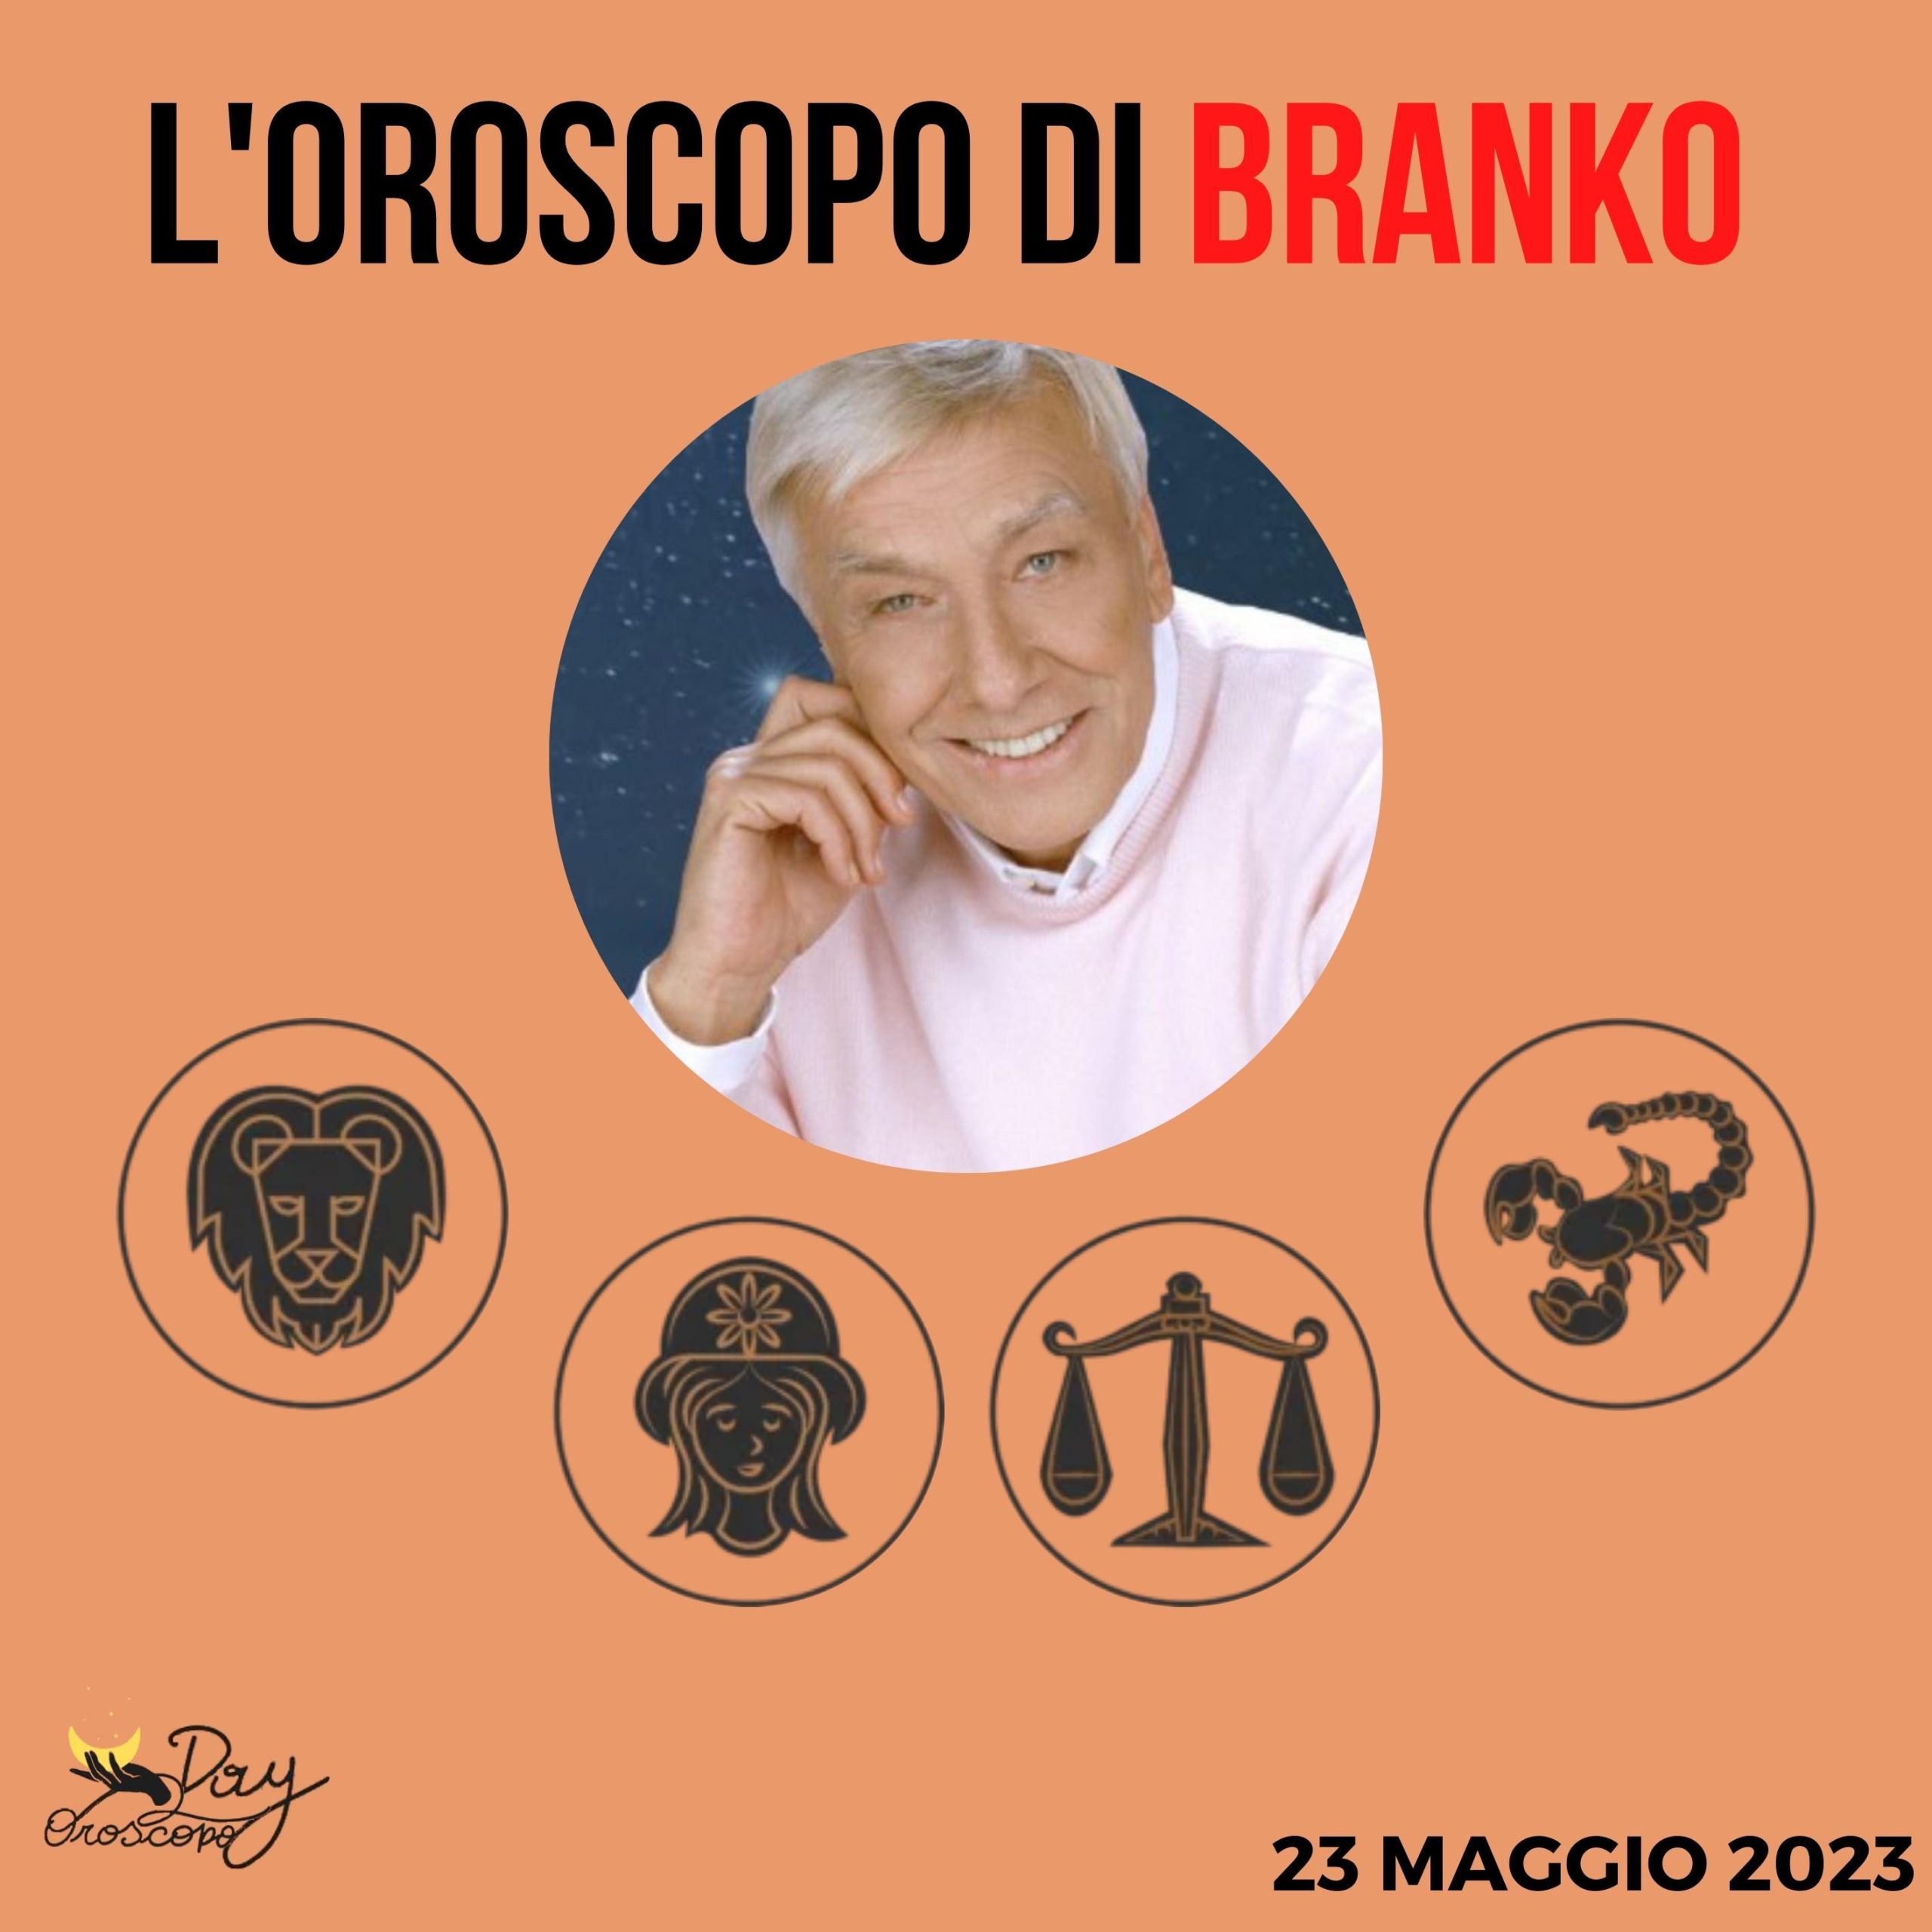 Oroscopo oggi domani Branko 23 maggio Leone Vergine Bilancia Scorpione